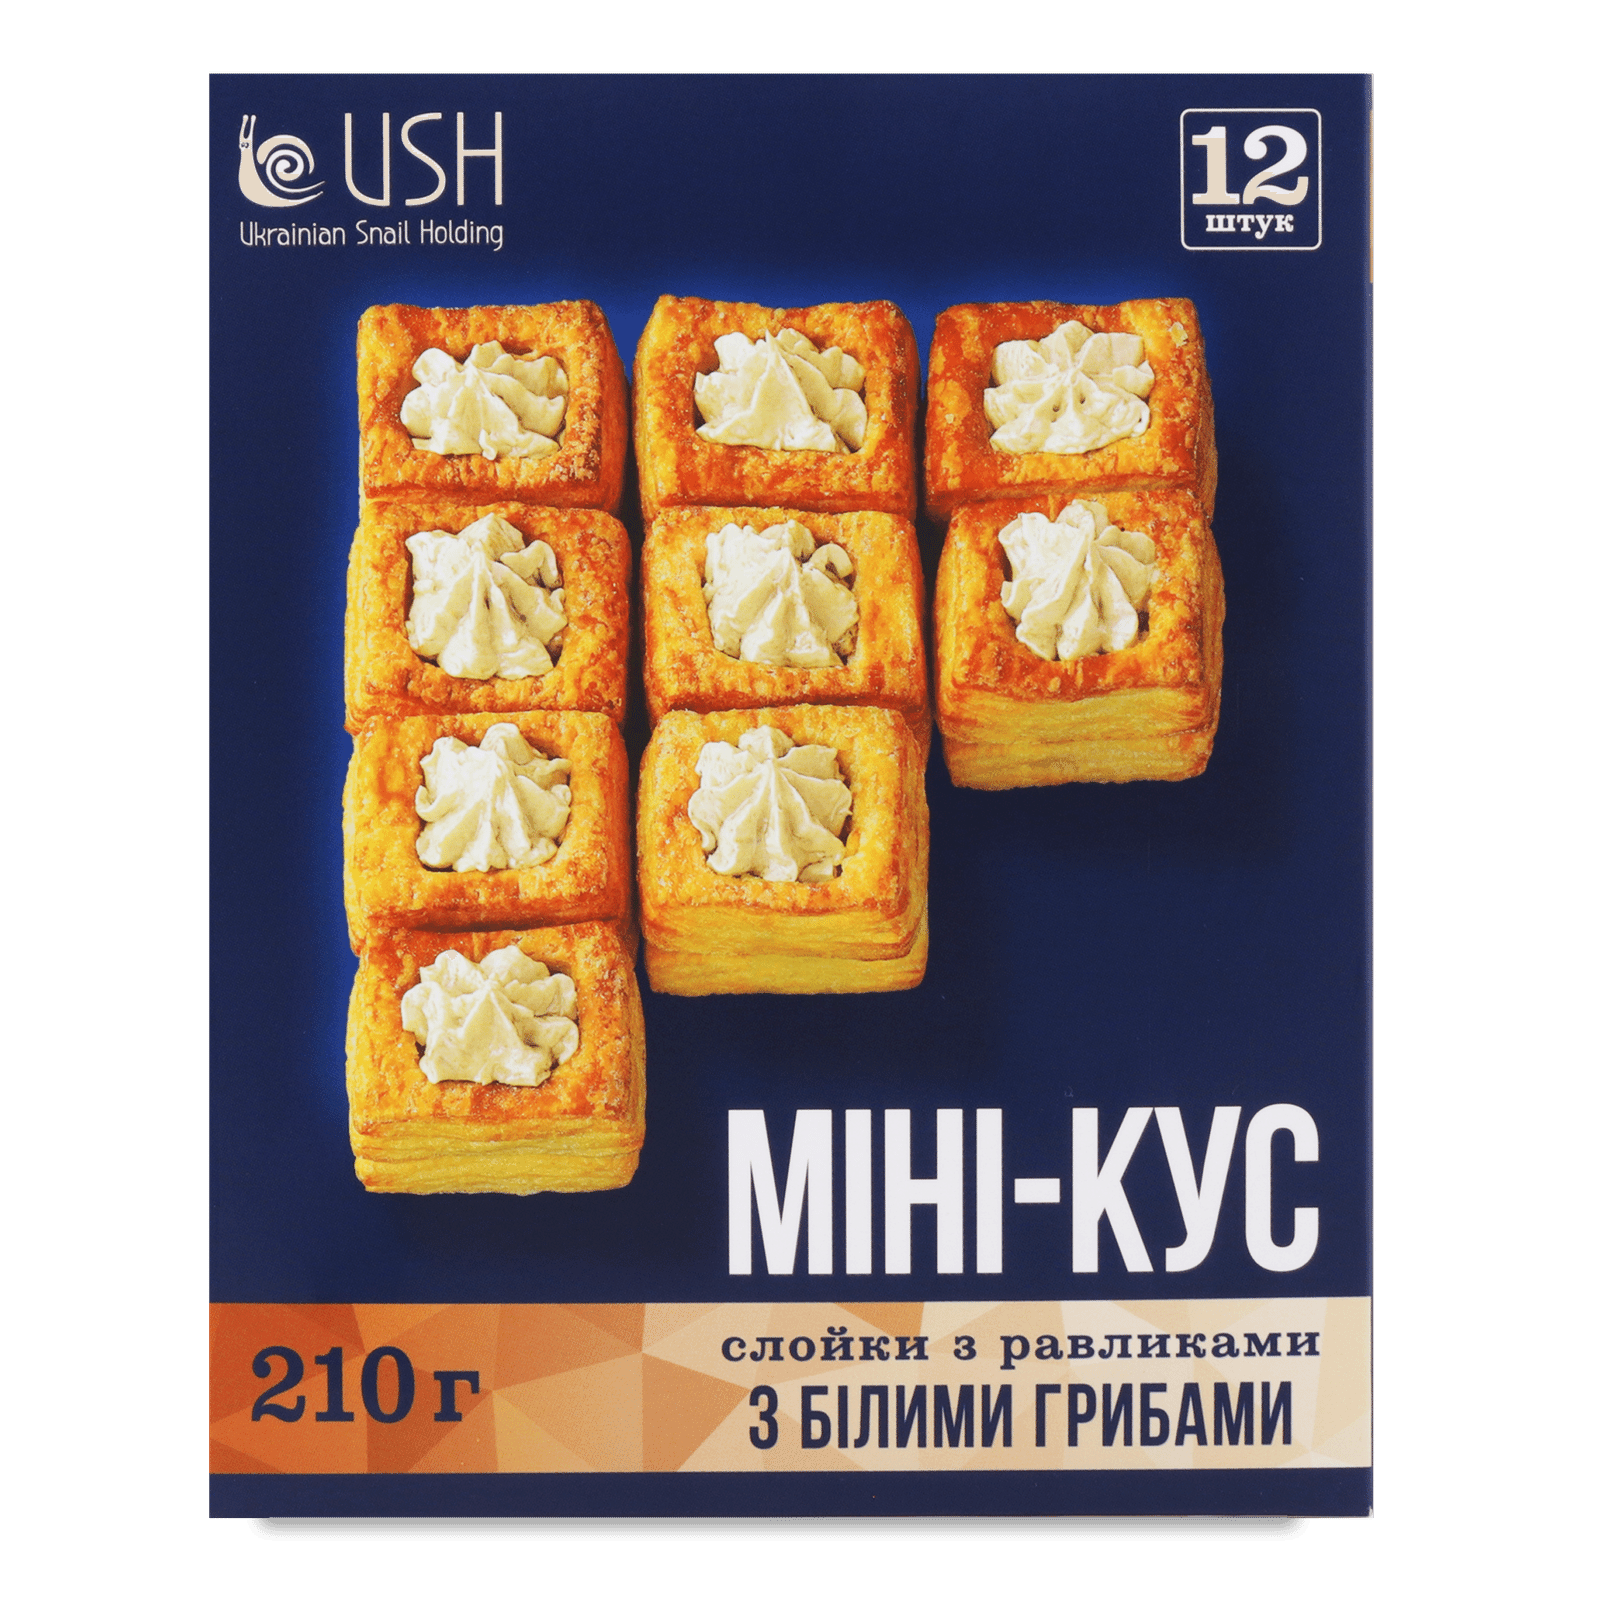 Слойки «Лавка Традицій» USH з равликами і білими грибами мінікус заморожені - 1